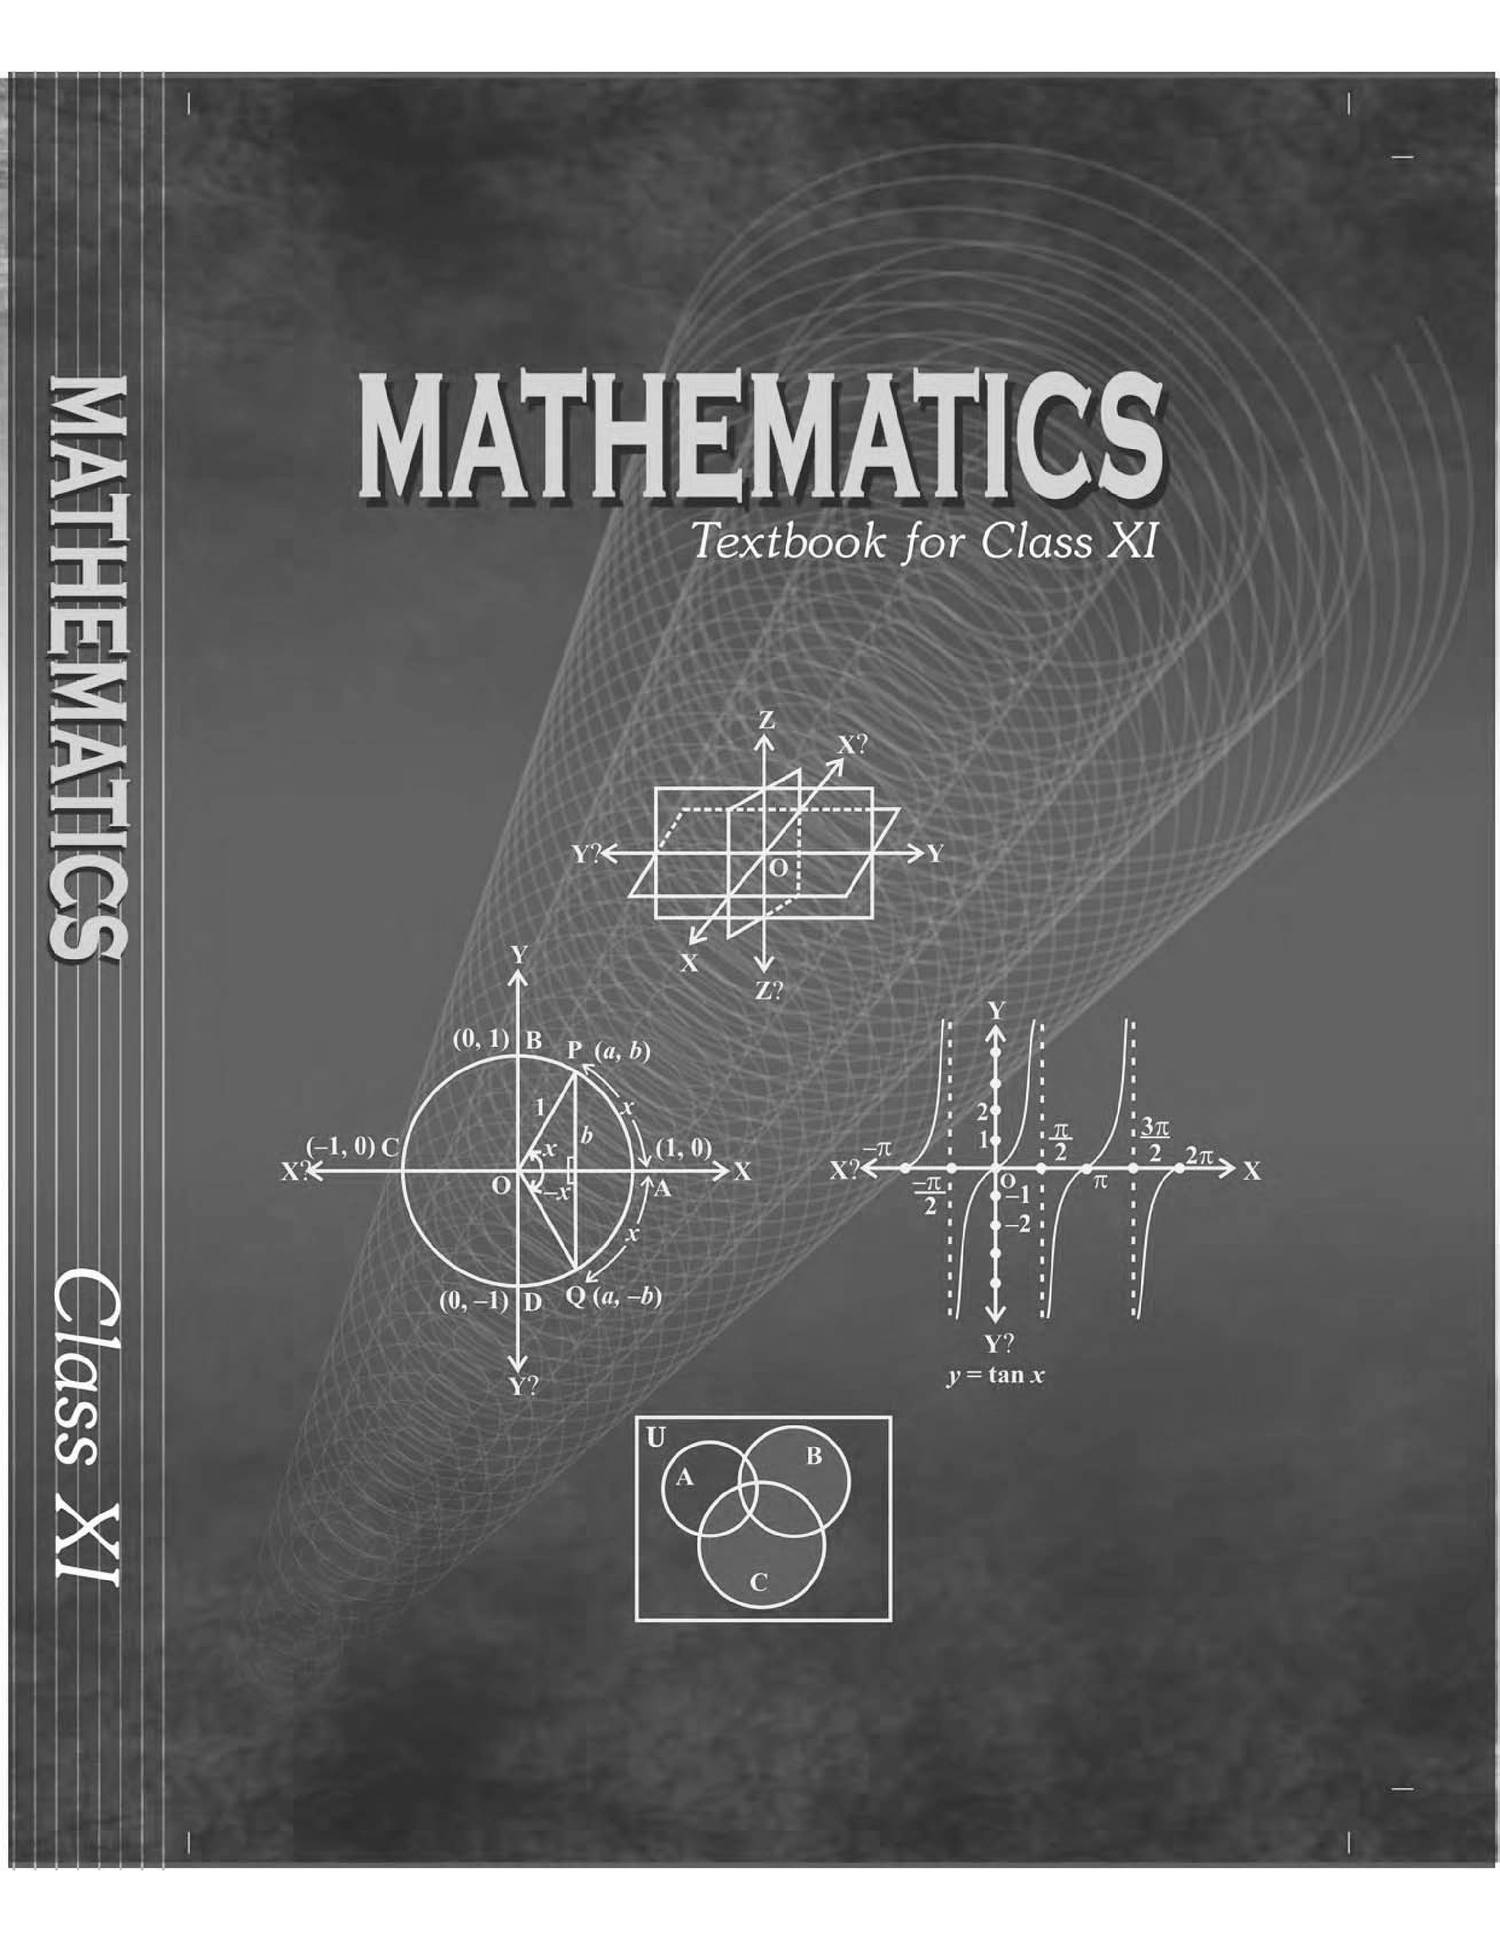 Pdf mathematics. Обложка для книги математика. Книга математика. Обложка учебника. Обложка книги по математики.